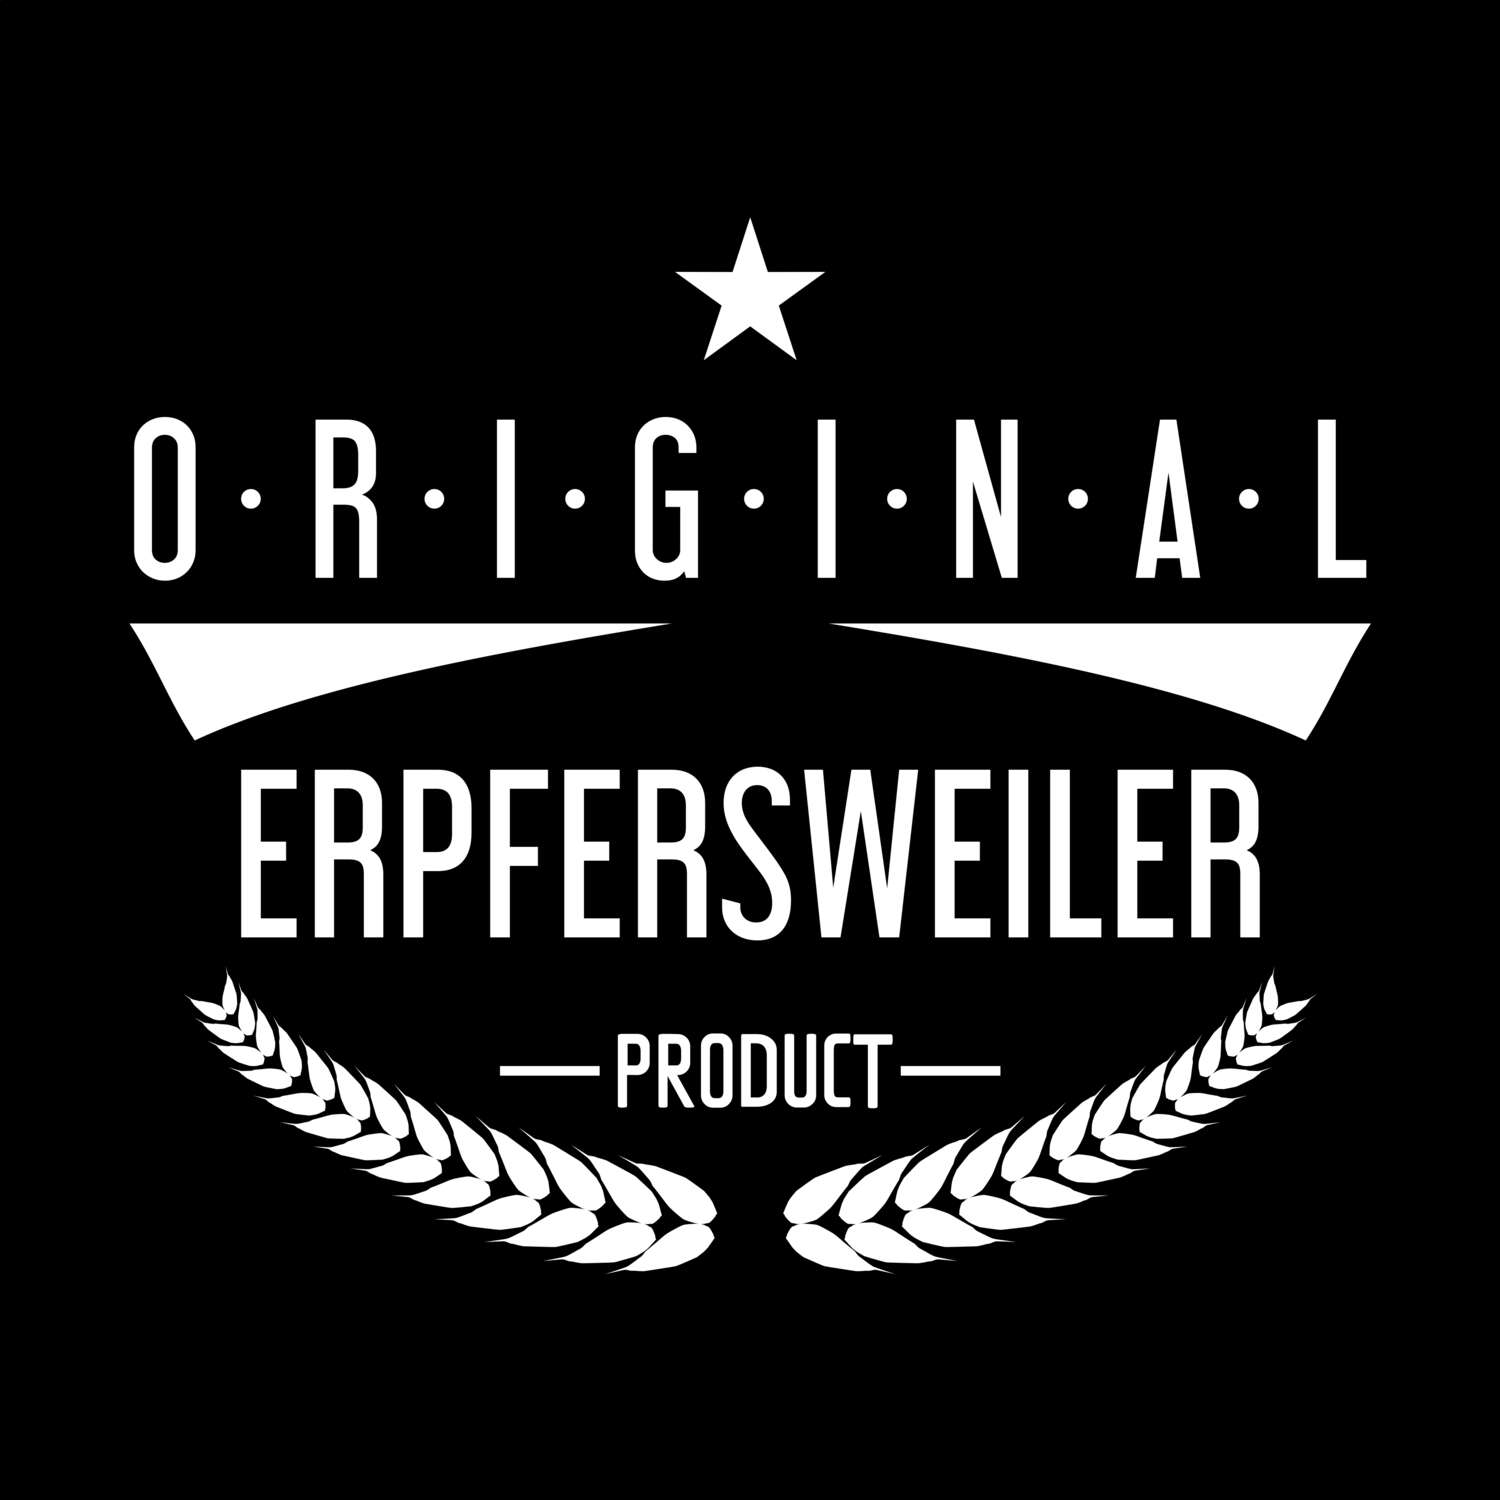 Erpfersweiler T-Shirt »Original Product«